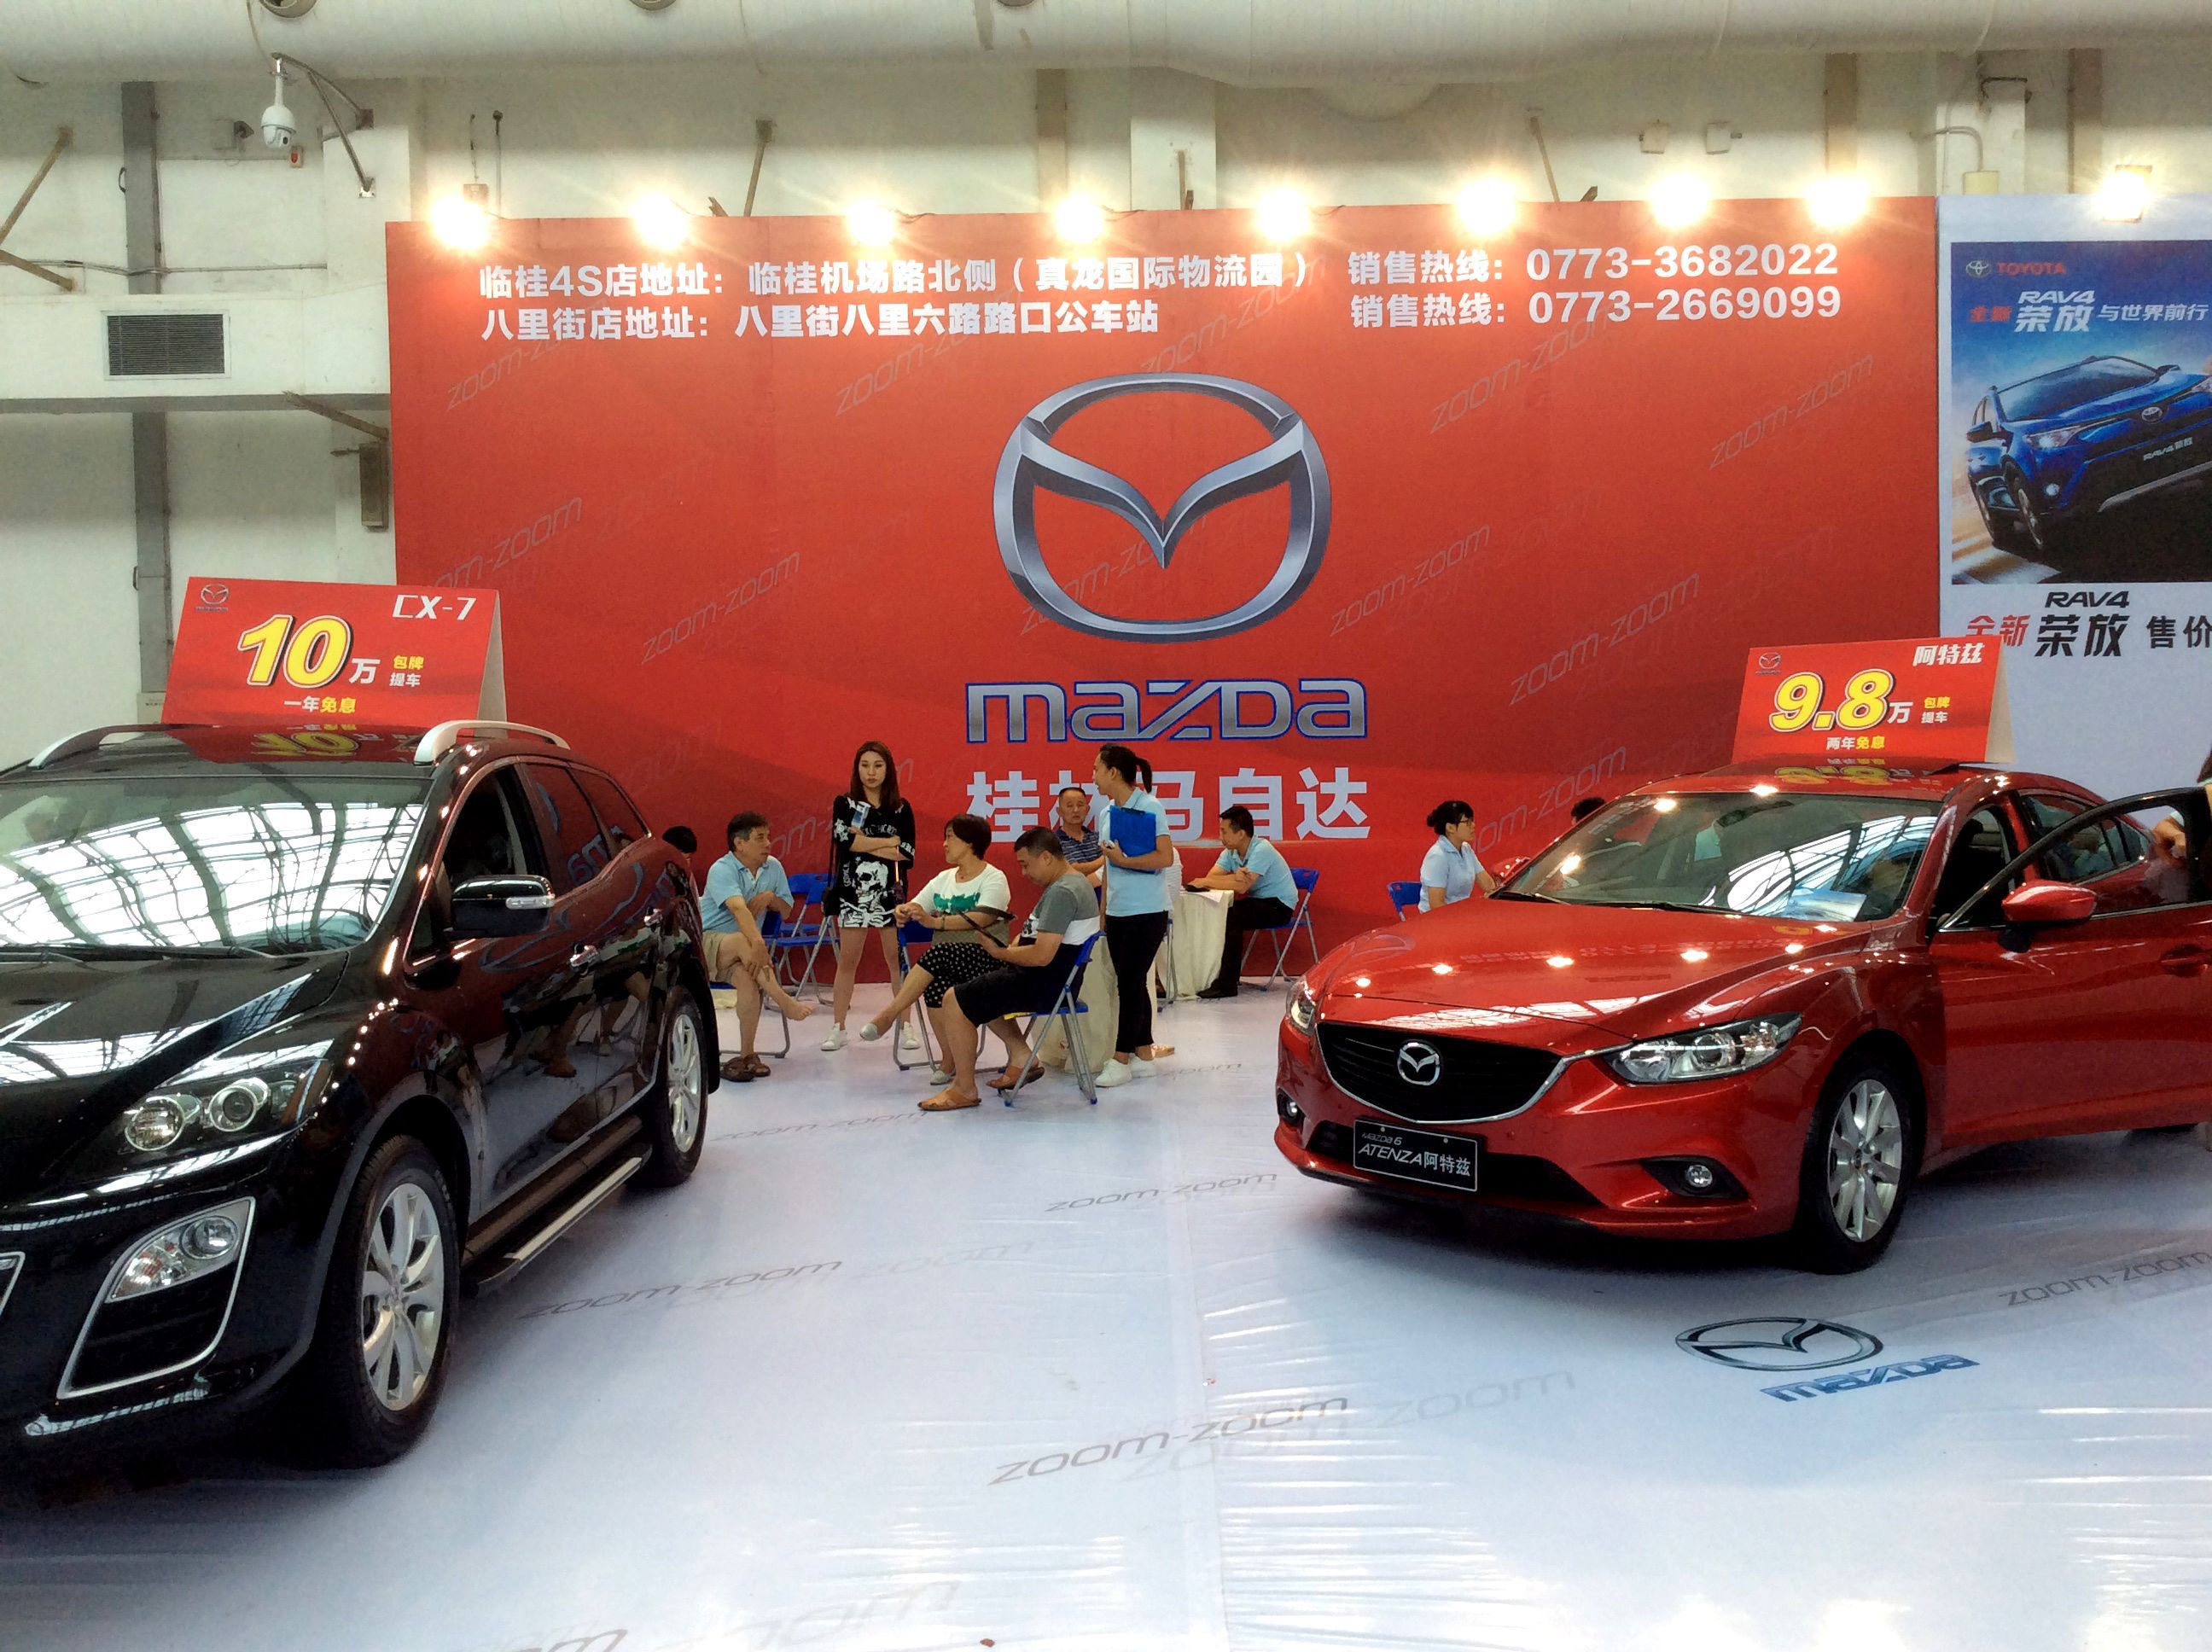 桂林の車展示会で日系車が一番多かったです 中国旅行ブログ 大陸だより